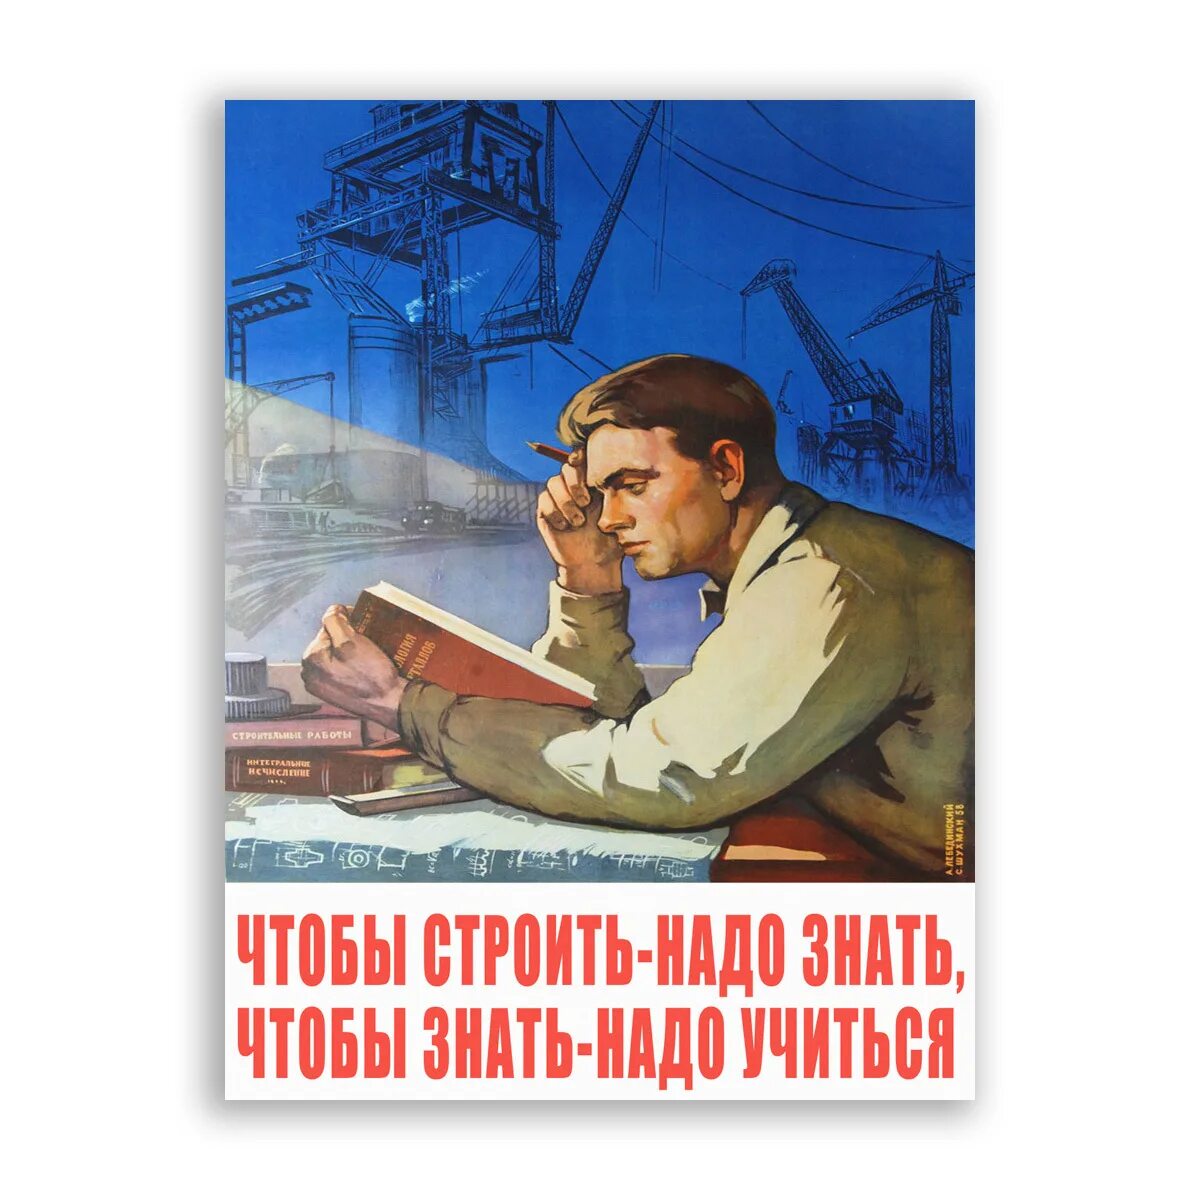 Советские плакаты чтобы строить надо знать. Чтобы строить надо знать чтобы знать надо учиться. Советские плакаты Мотивационные. Постер чтобы строить надо знать. Строим быстро плакат